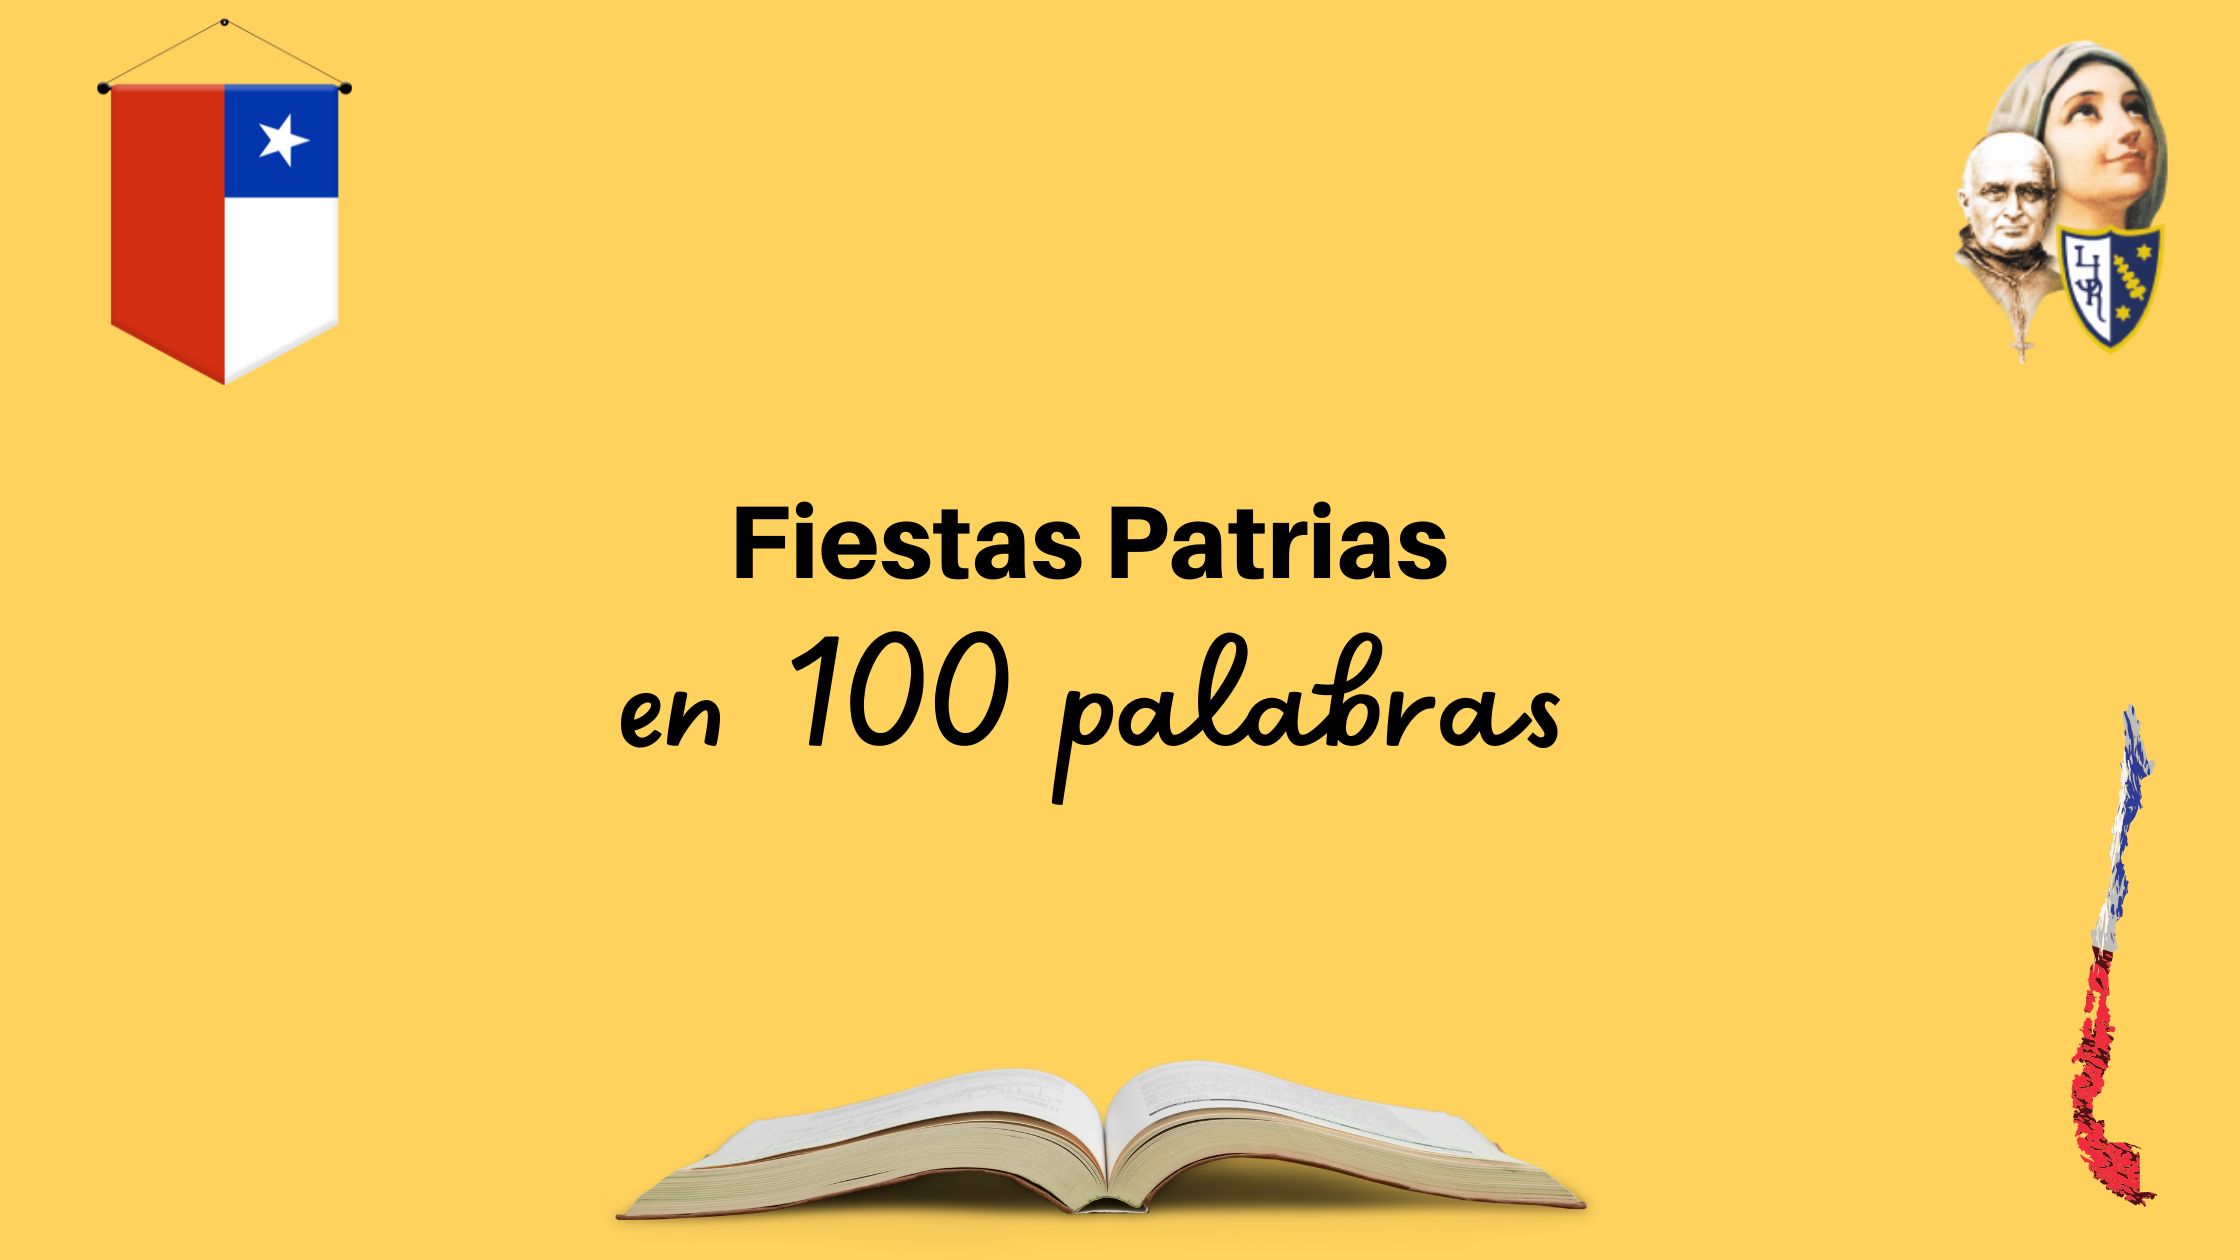 Fiestas Patrias en 100 palabras (Banner para blog)